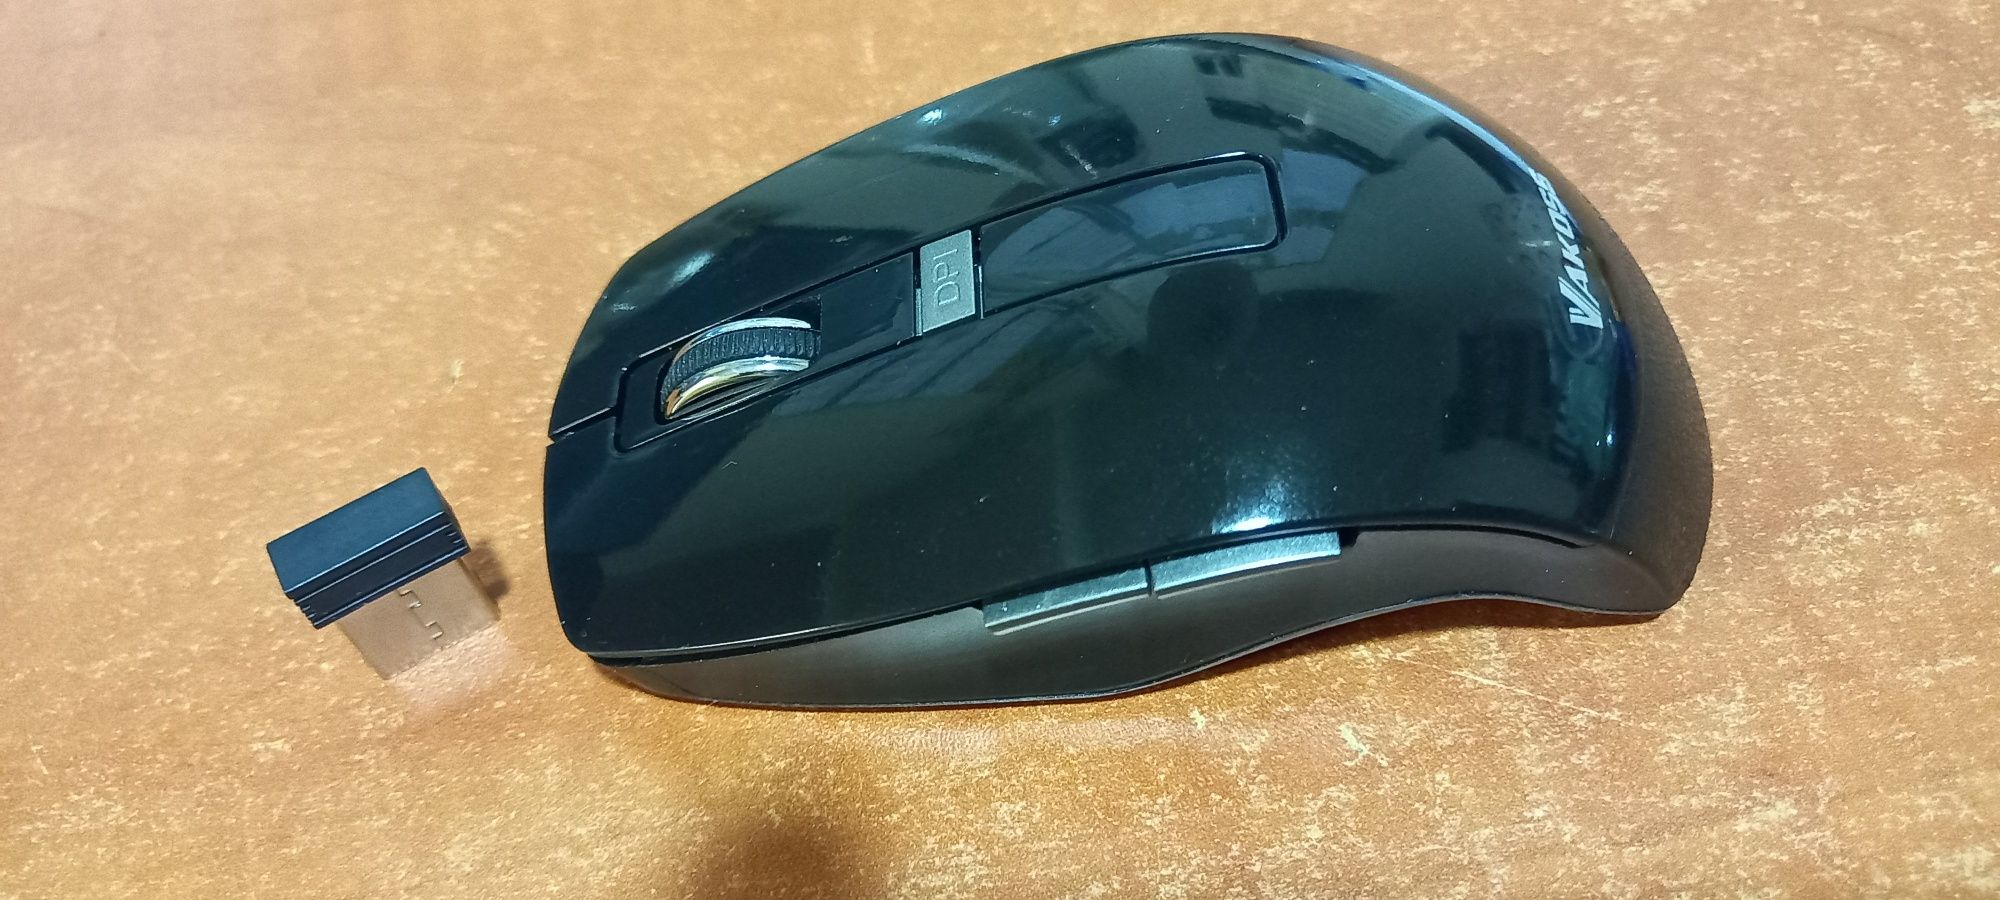 Bezprzewodowa mysz komputerowa Vakoss